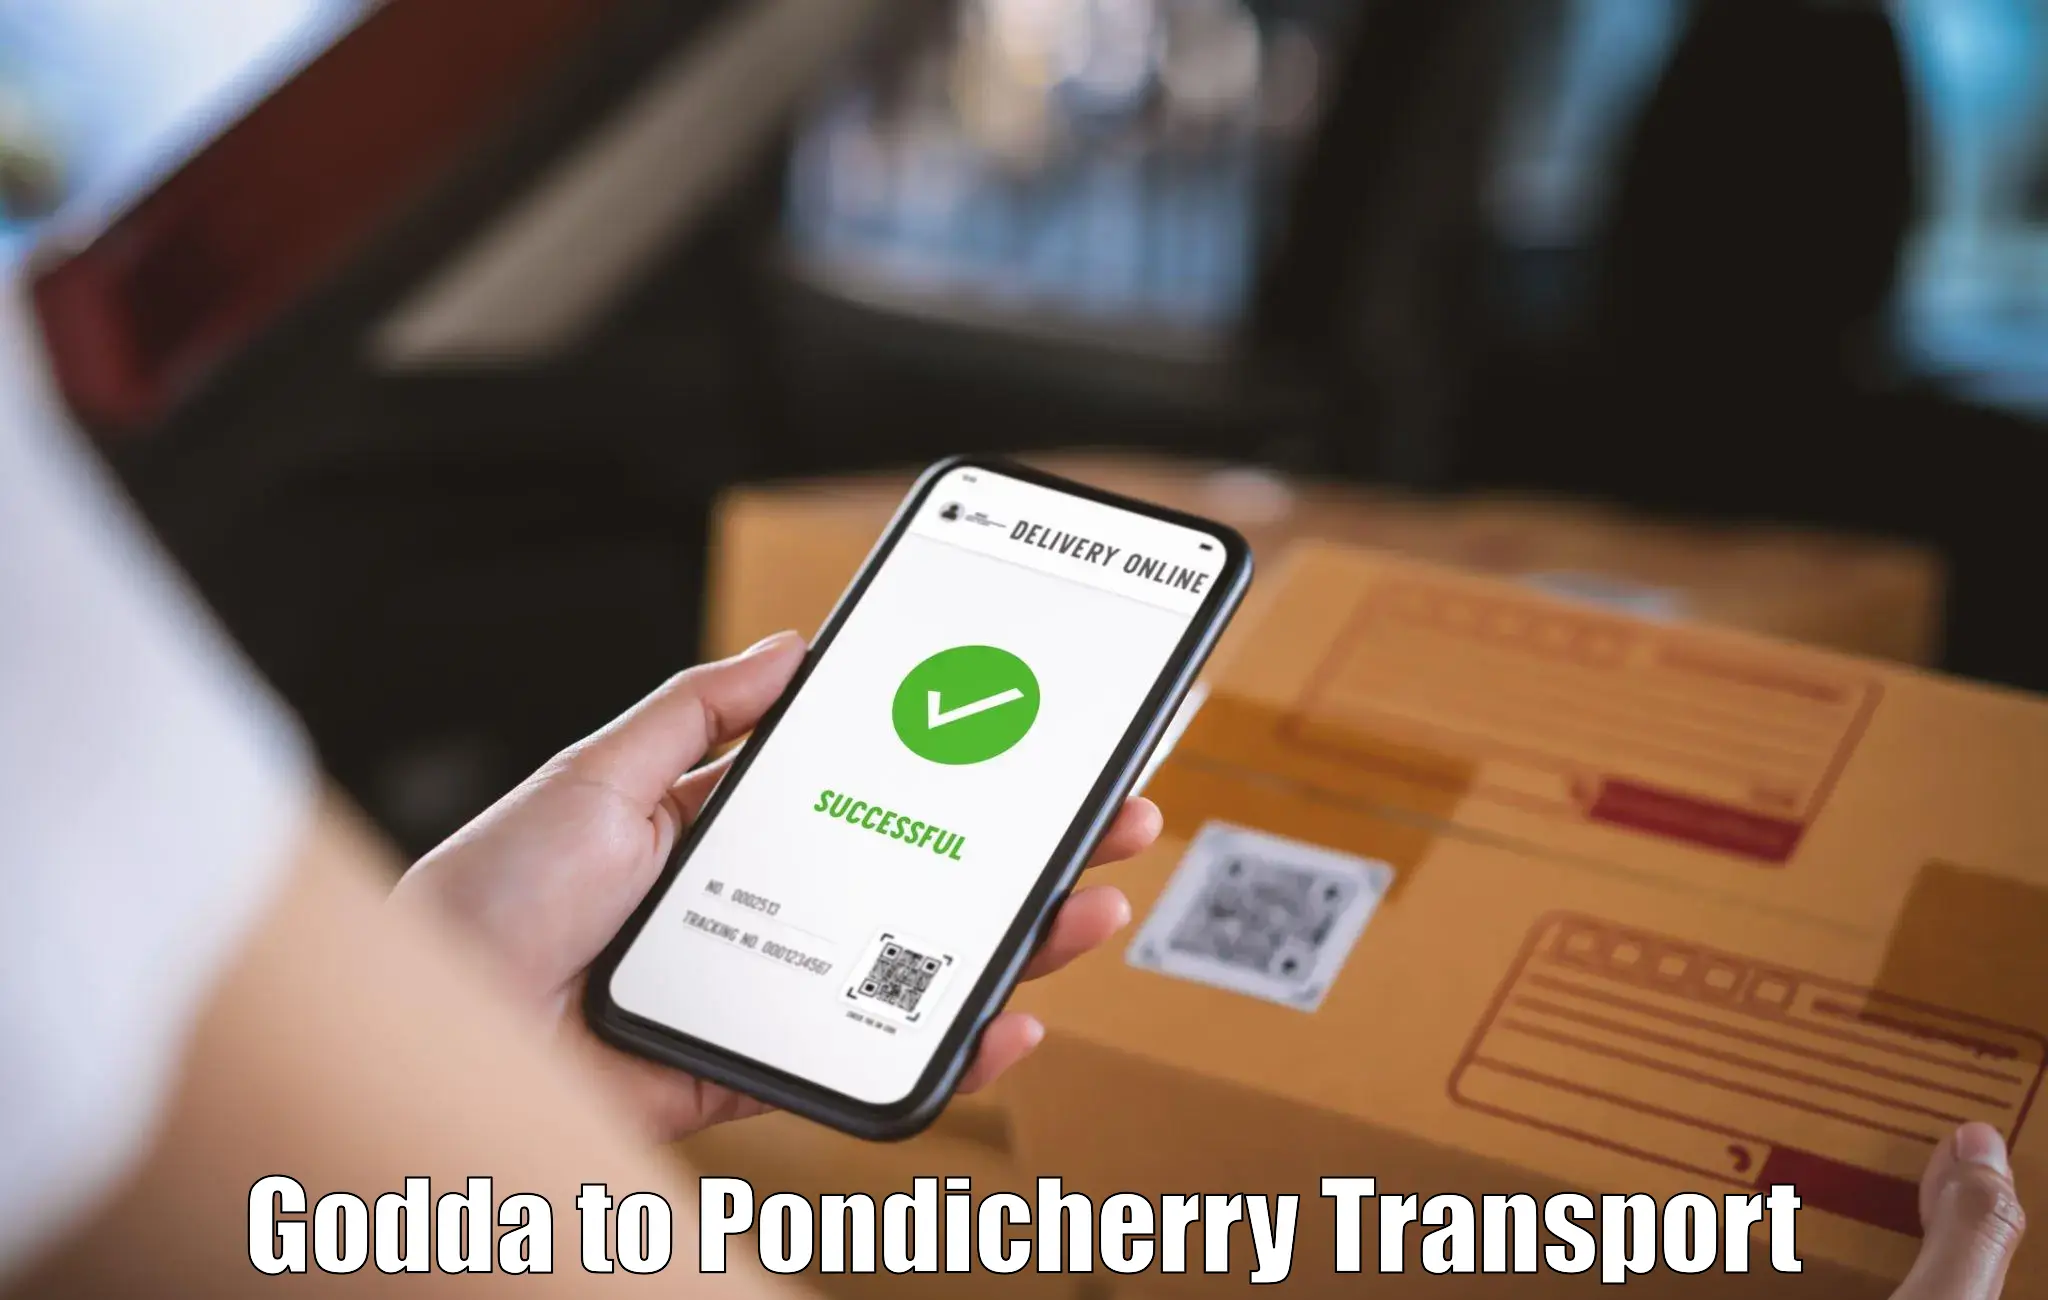 Daily transport service Godda to Pondicherry University